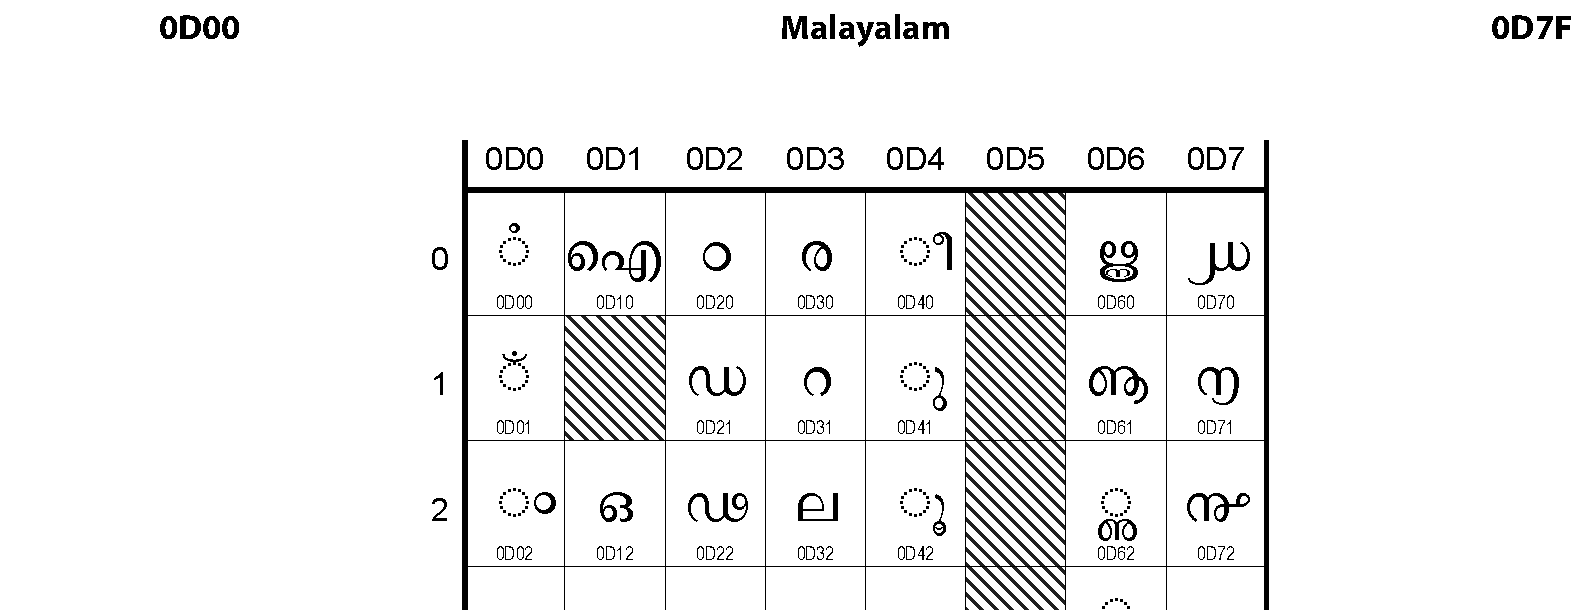 Unicode - Malayalam